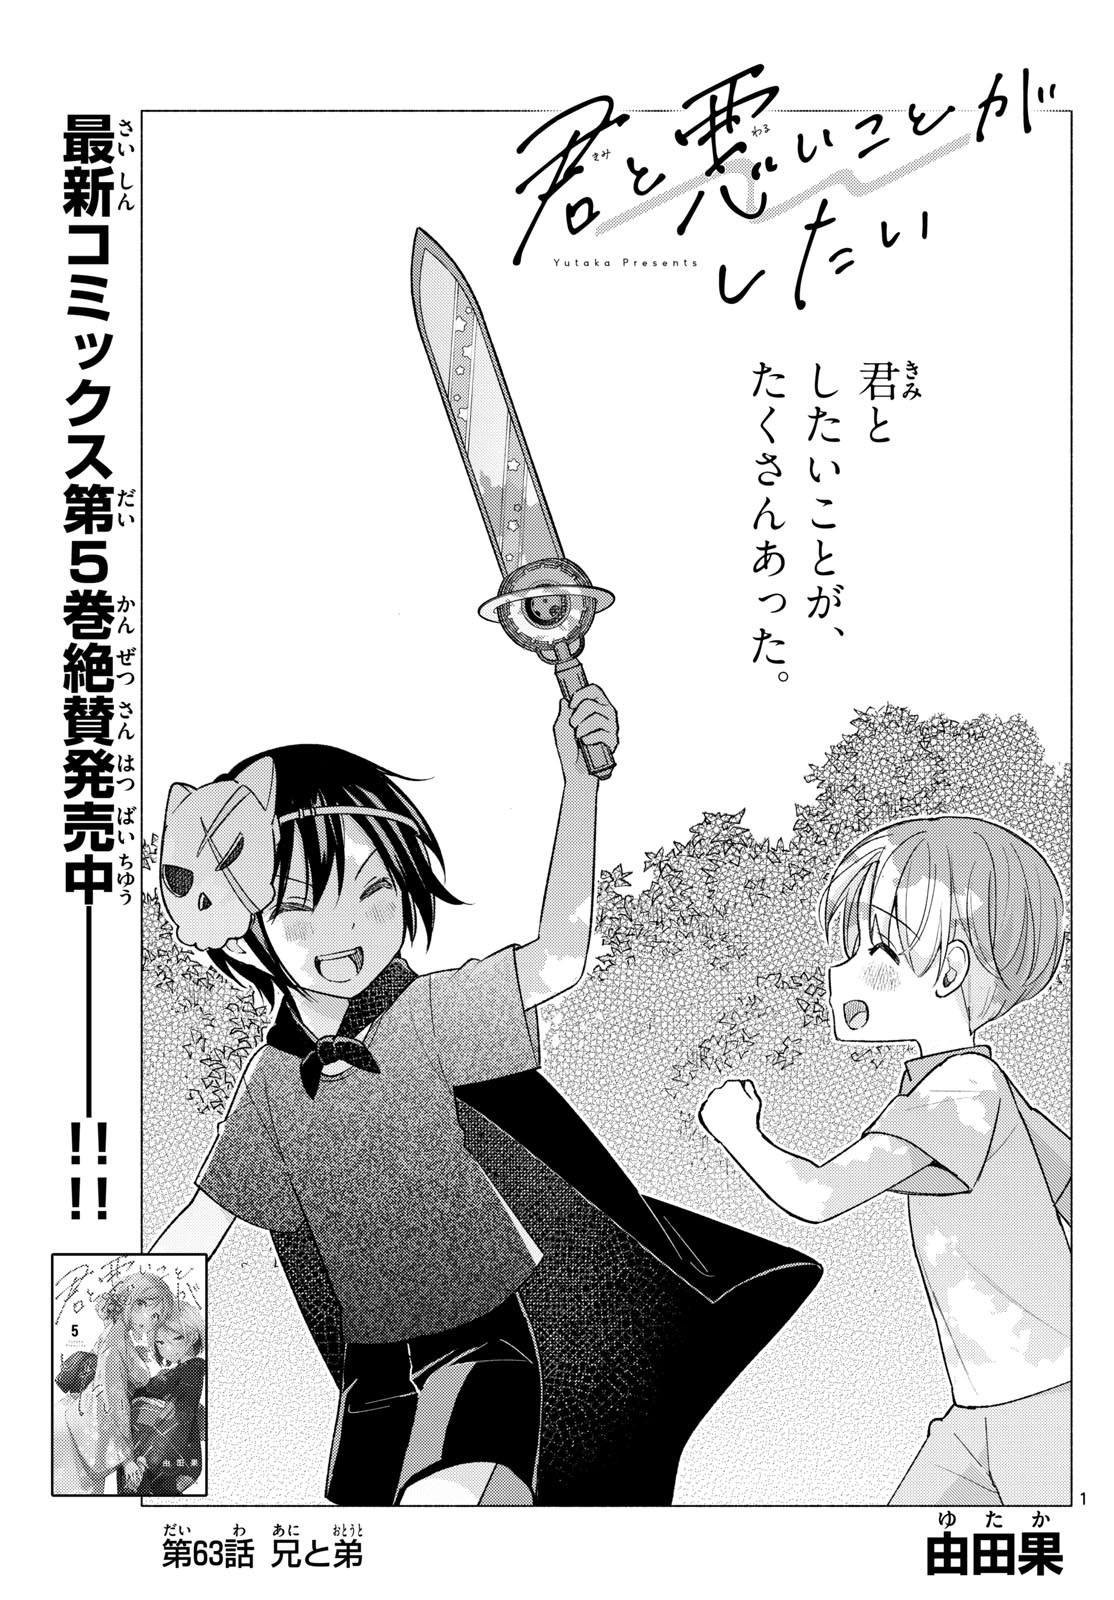 Kimi to Warui Koto ga Shitai - Chapter 063 - Page 1